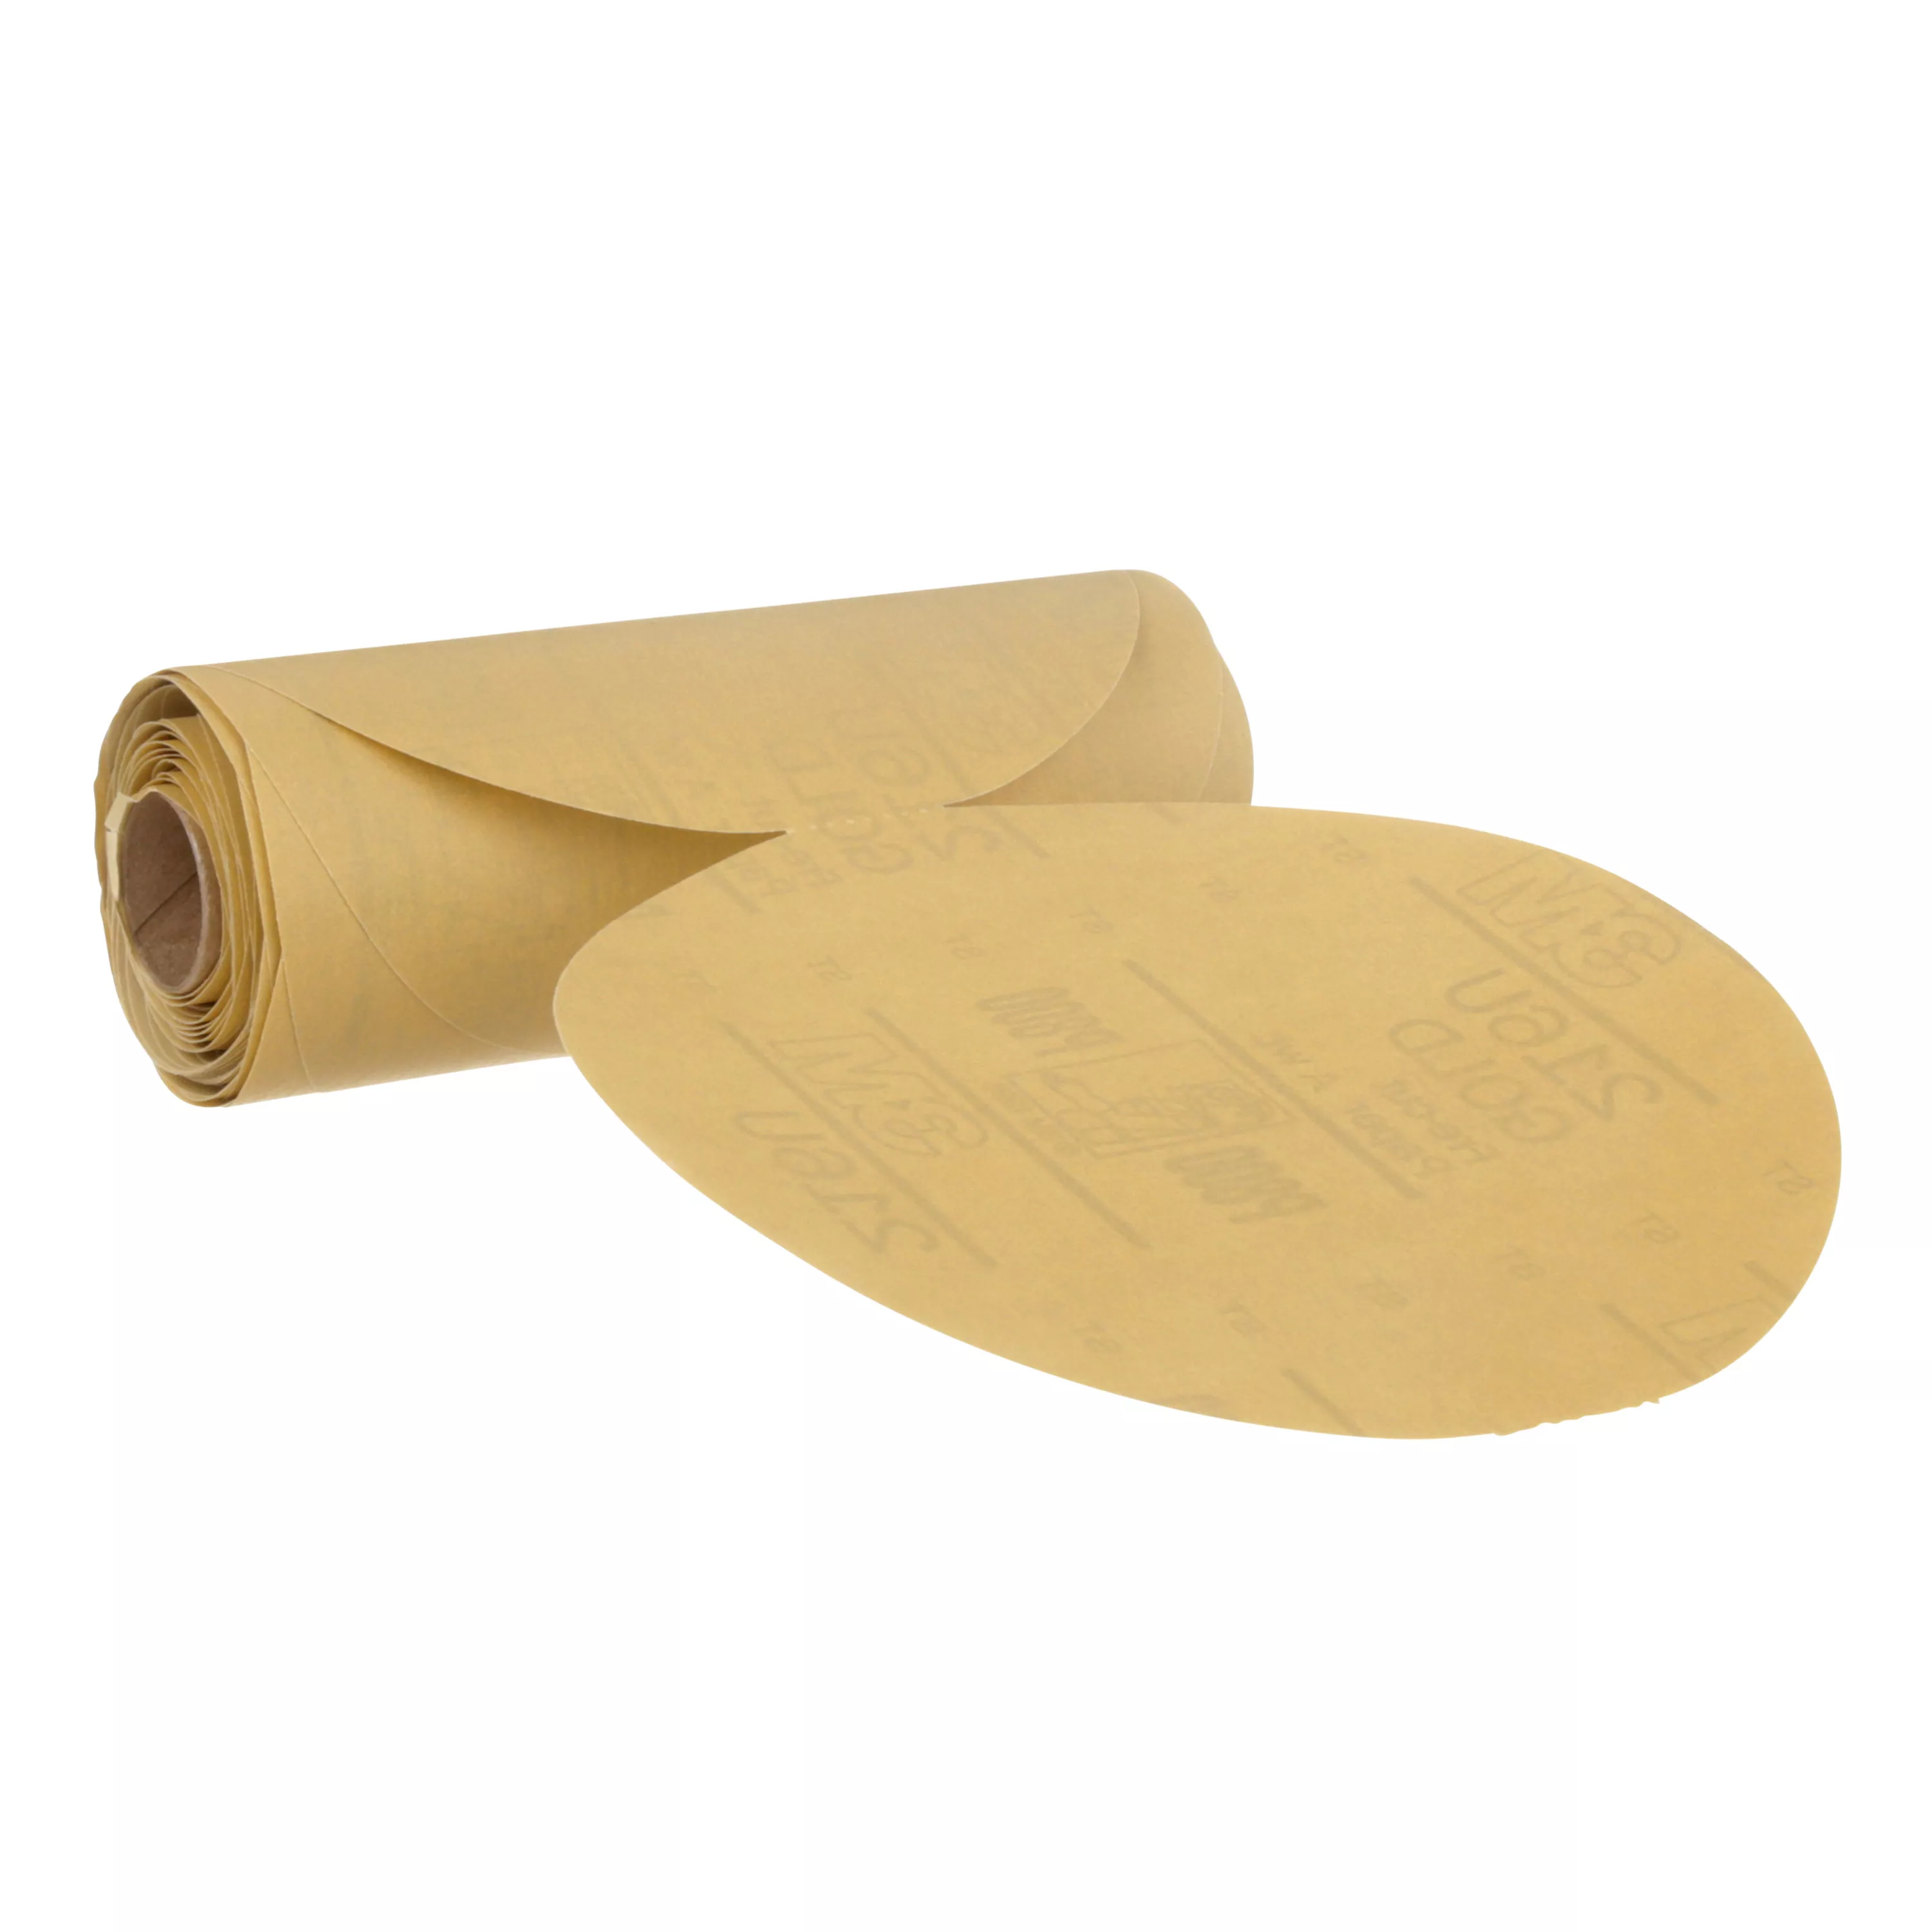 3M™ Stikit™ Gold Paper Disc 216U, 01200, 6 in, P800A grade, 75 discs per
roll, 6 rolls per case